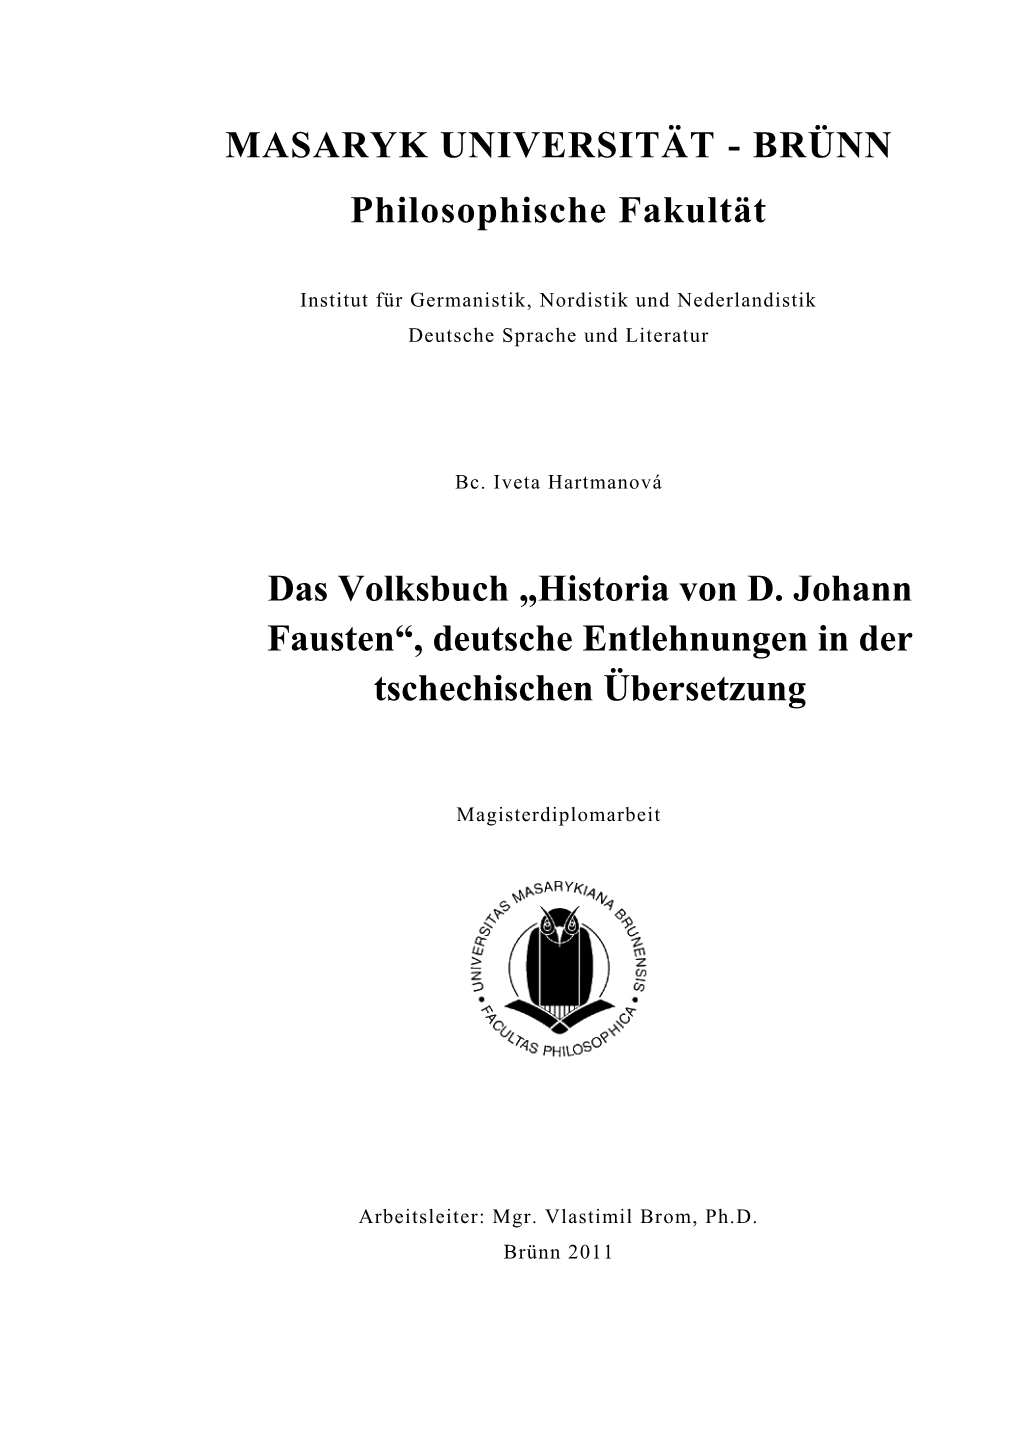 Historia Von D. Johann Fausten“, Deutsche Entlehnungen in Der Tschechischen Übersetzung